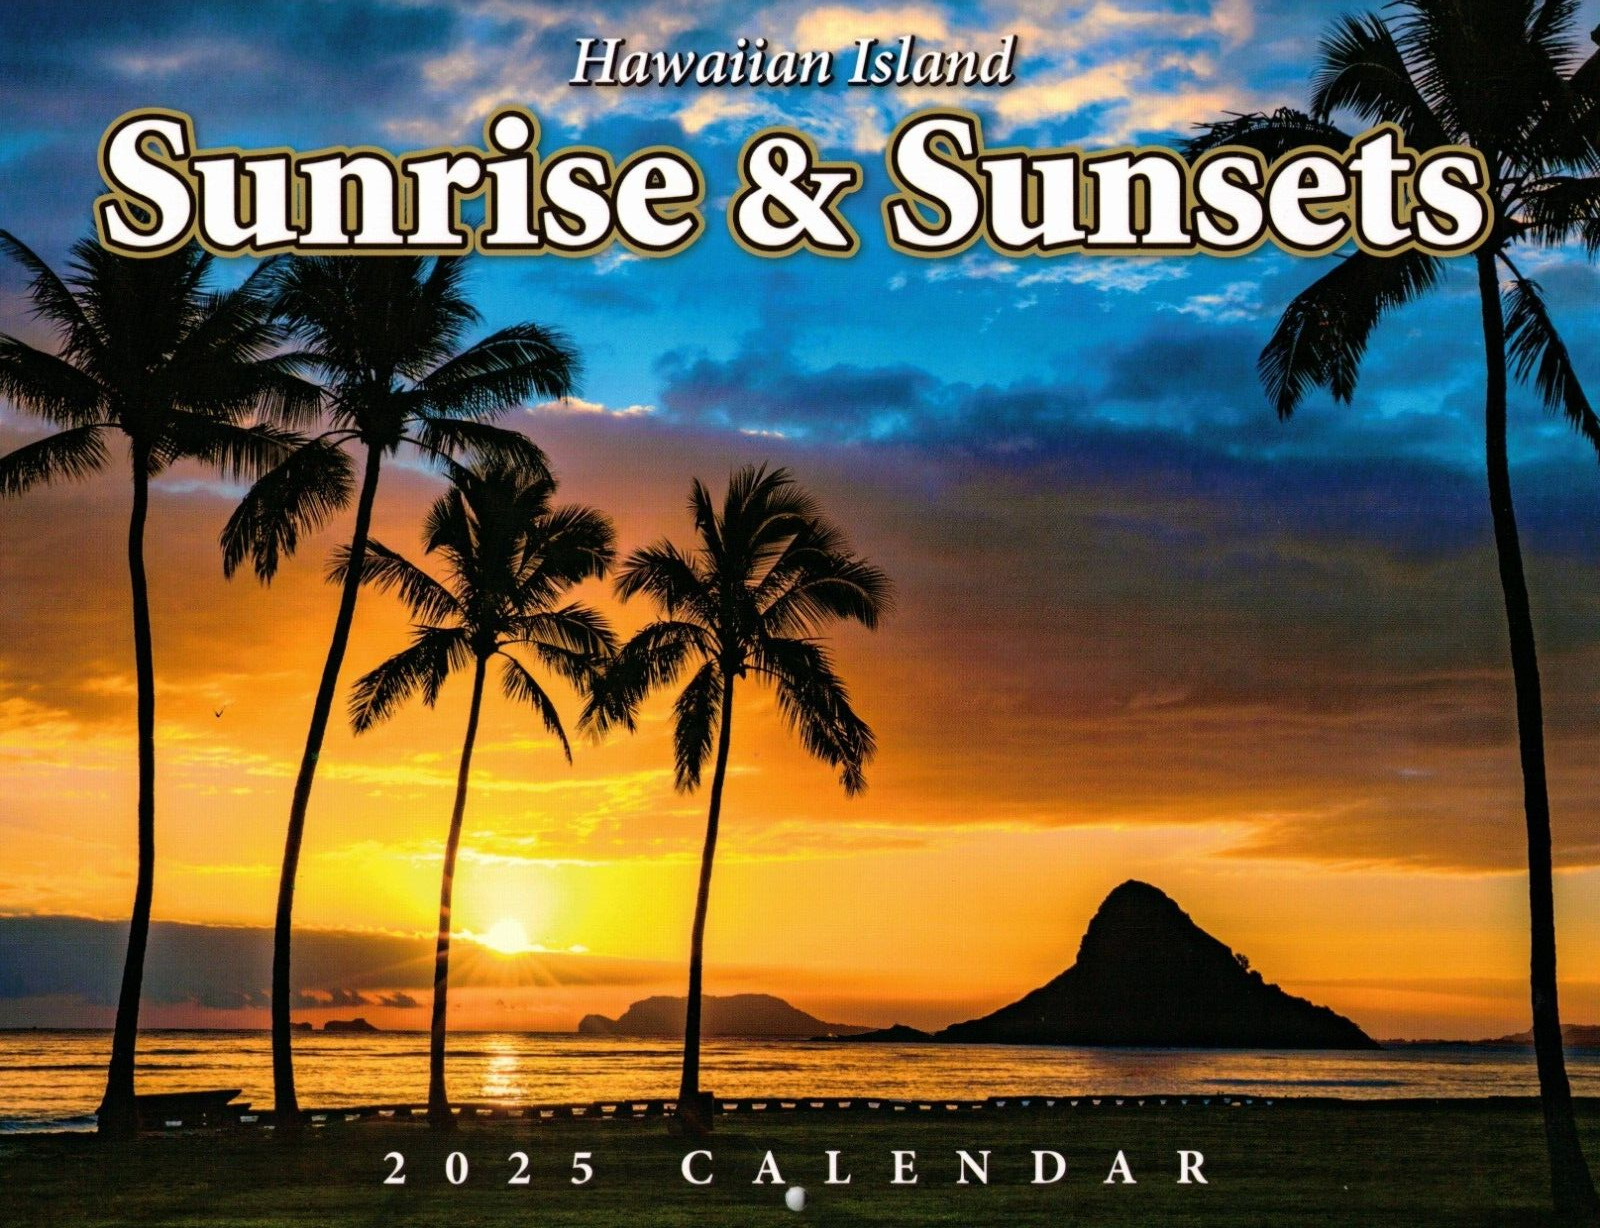 2025 CALENDAR - HAWAIIAN ISLAND SUNRISE & SUNSETS